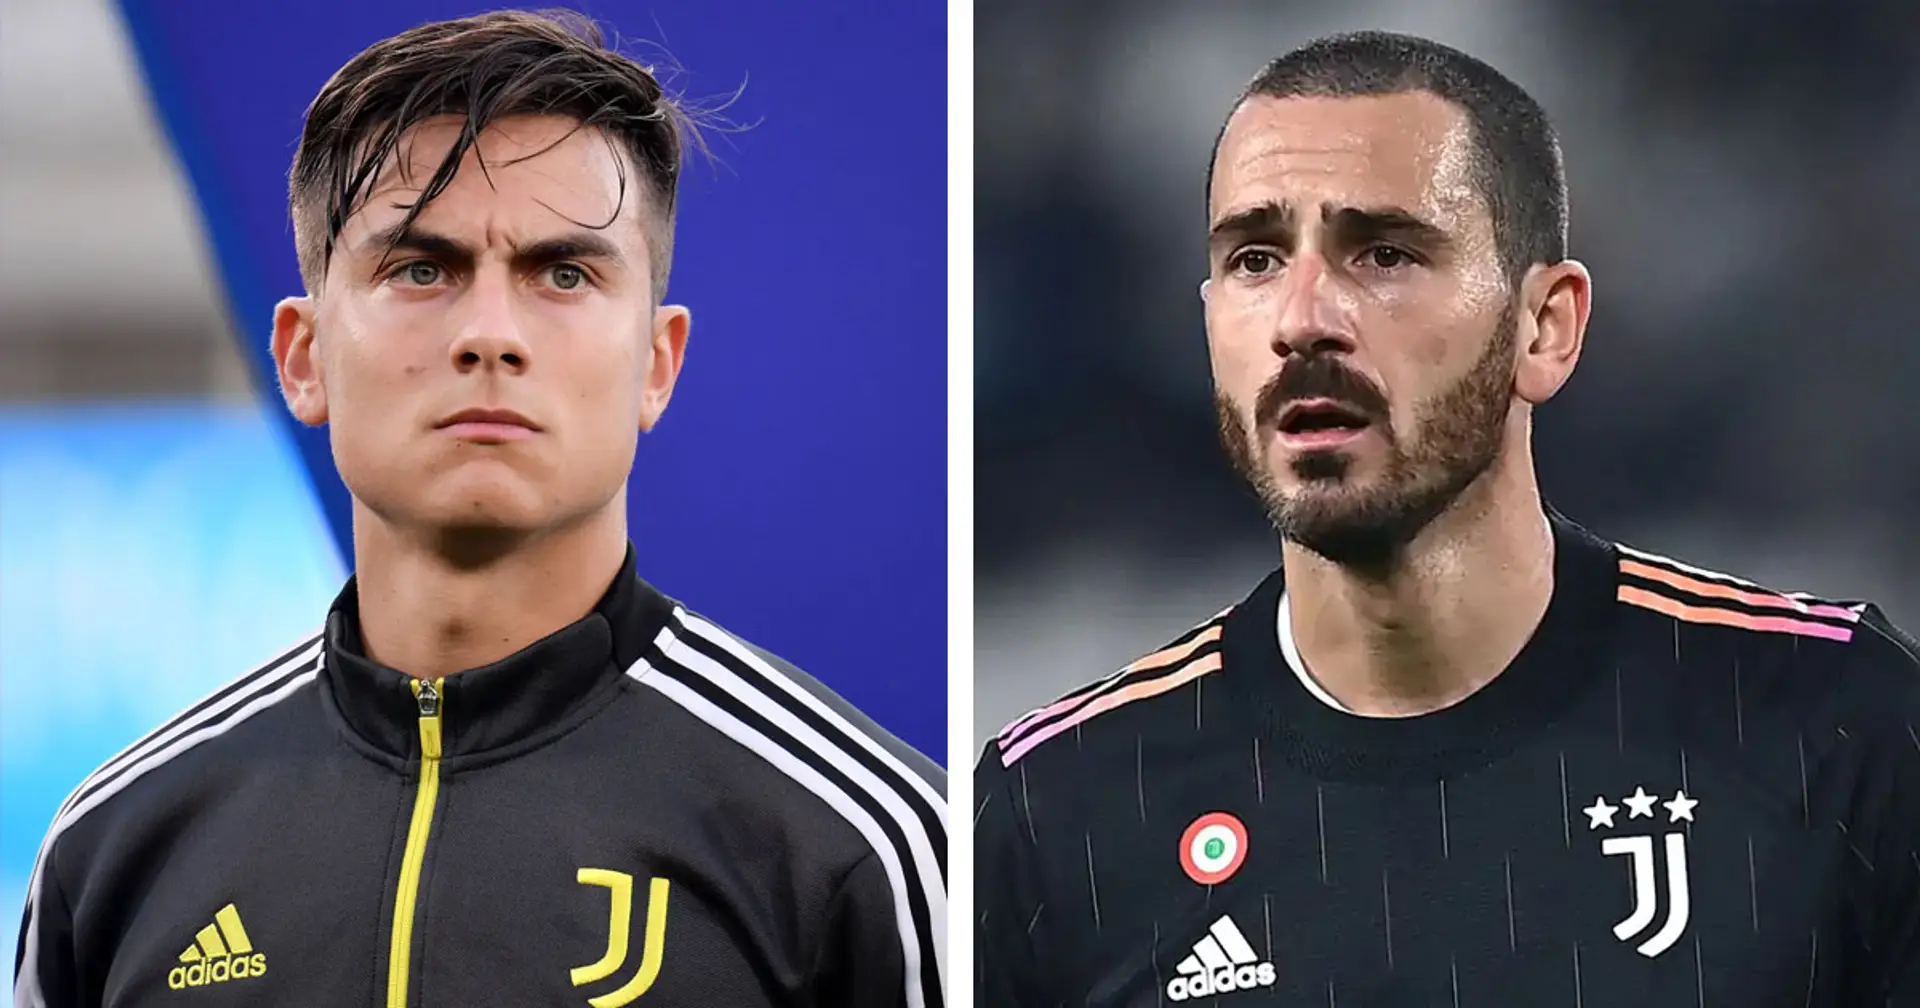 Bonucci capocannoniere della Juventus insieme a Dybala: 2 giocatori devono assolutamente fare di più